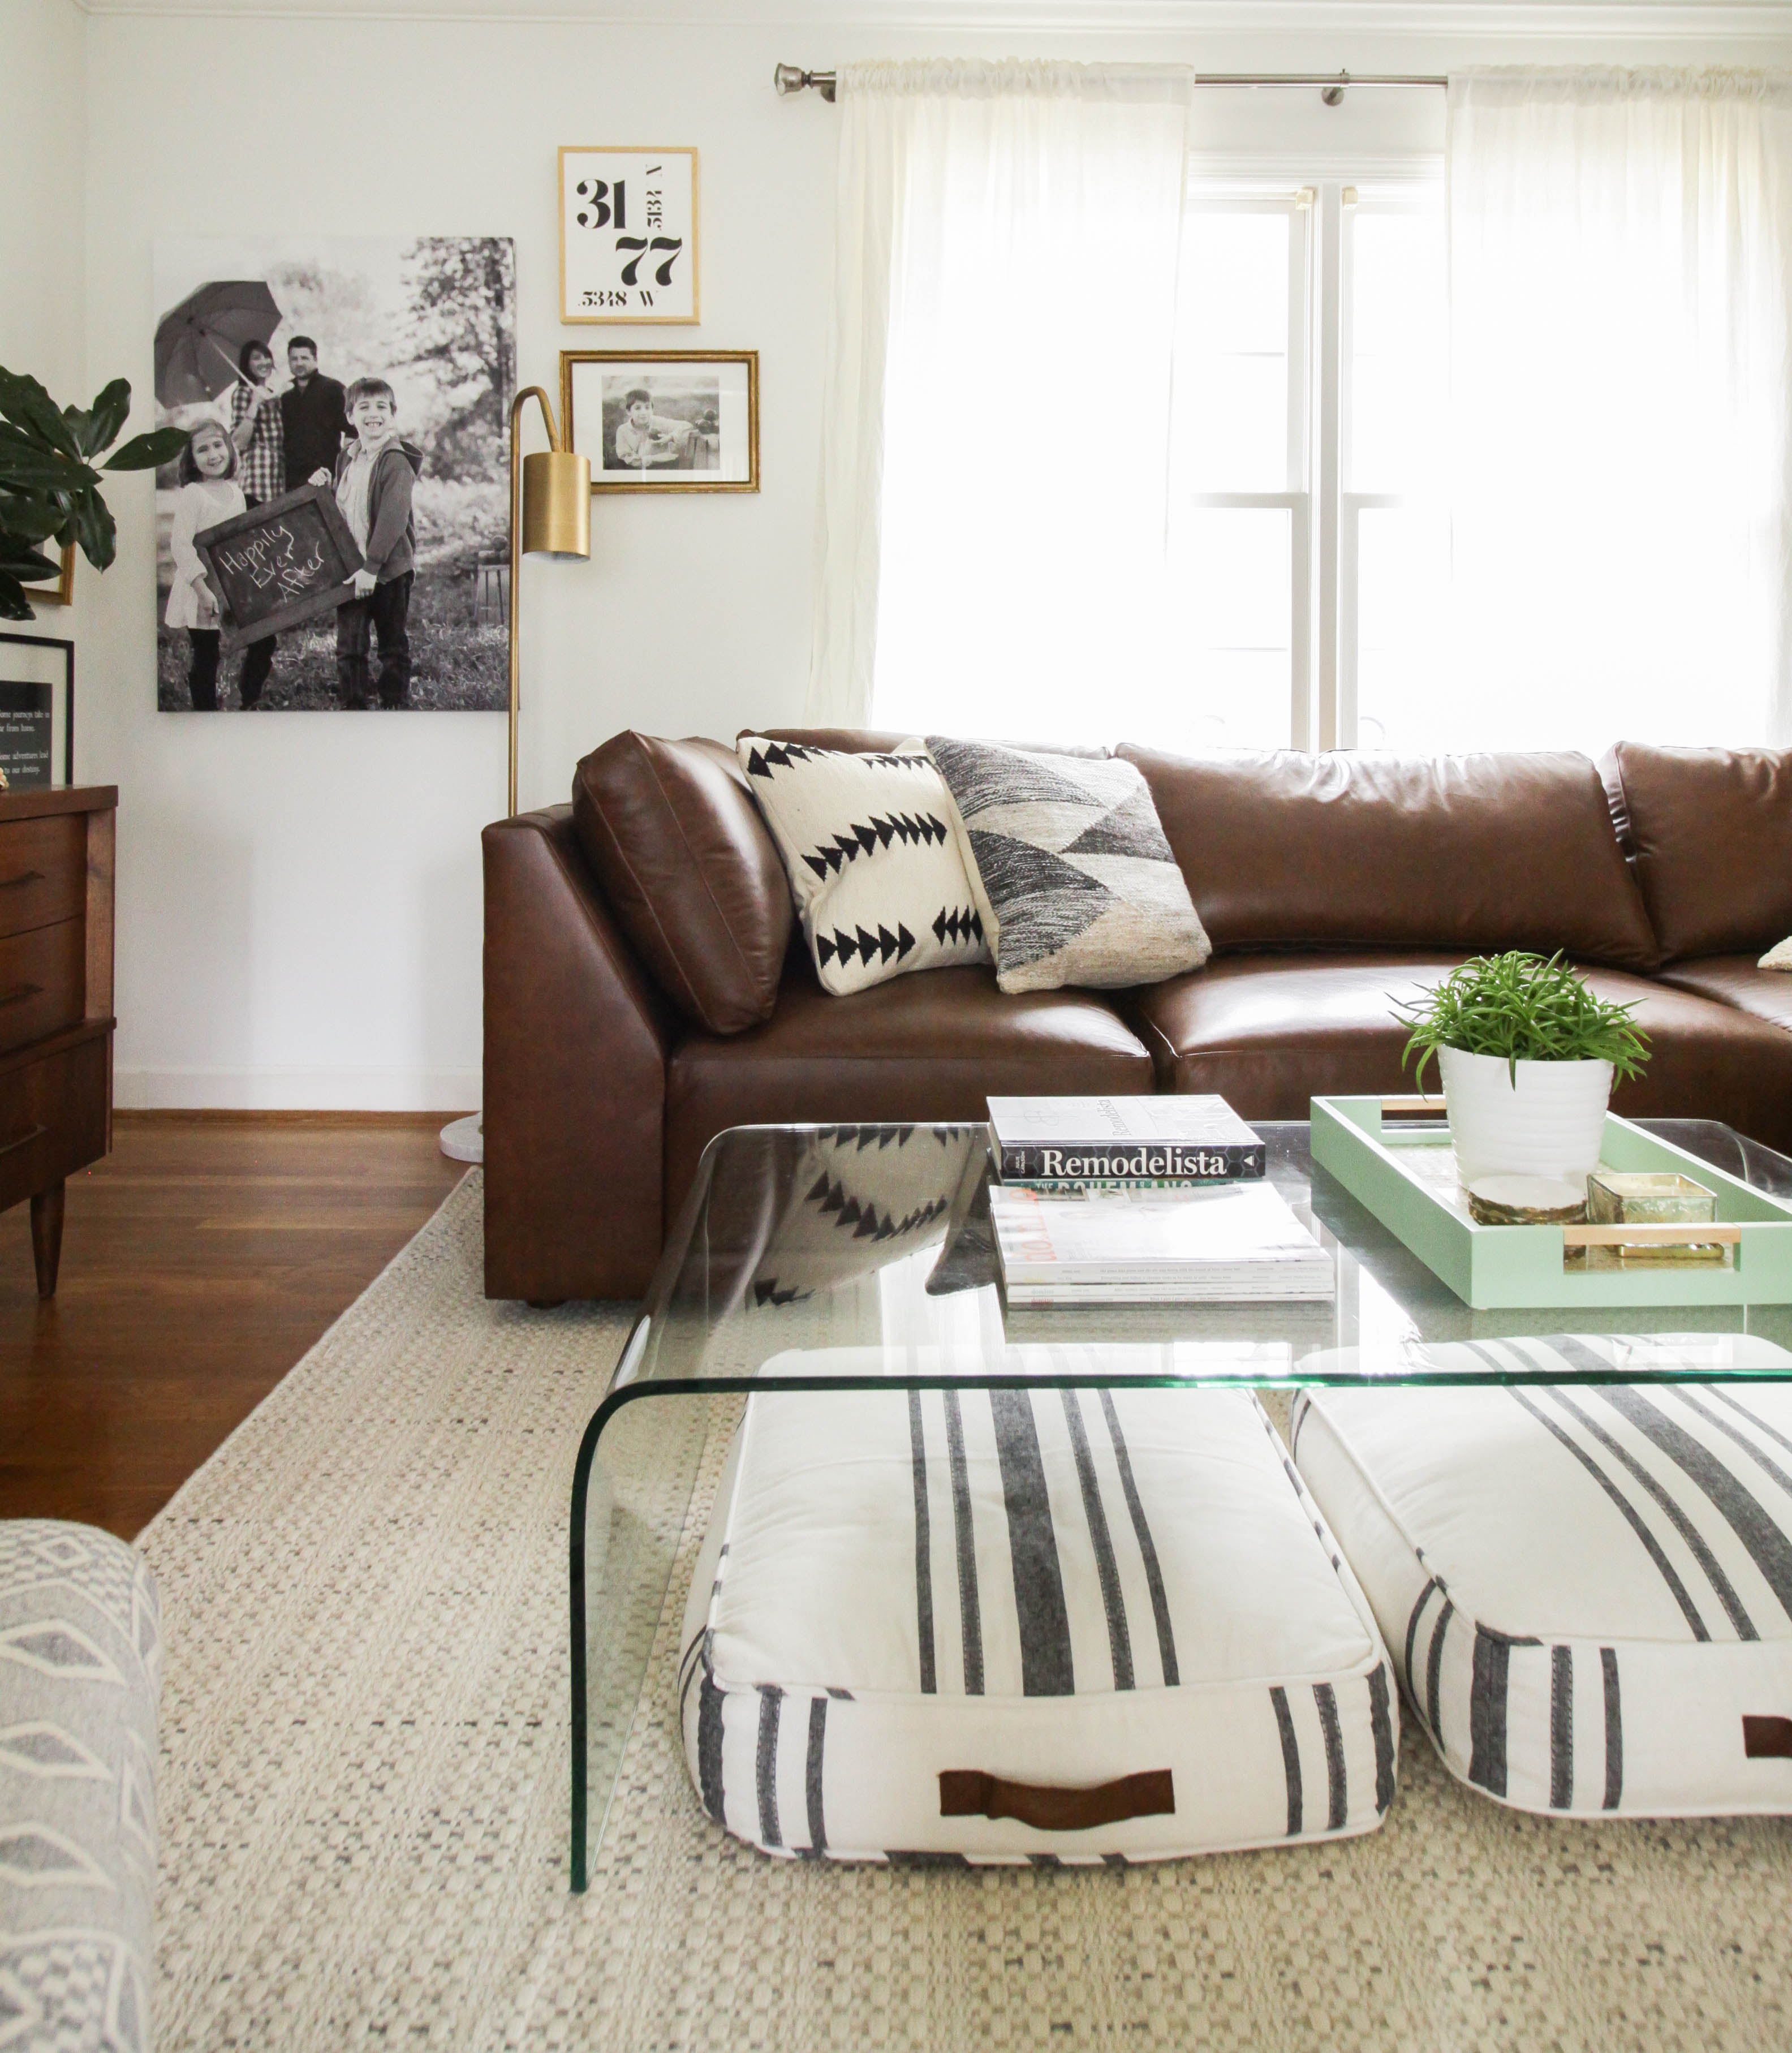 Living Room Progress With Bassett, Bassett Leather Sofas